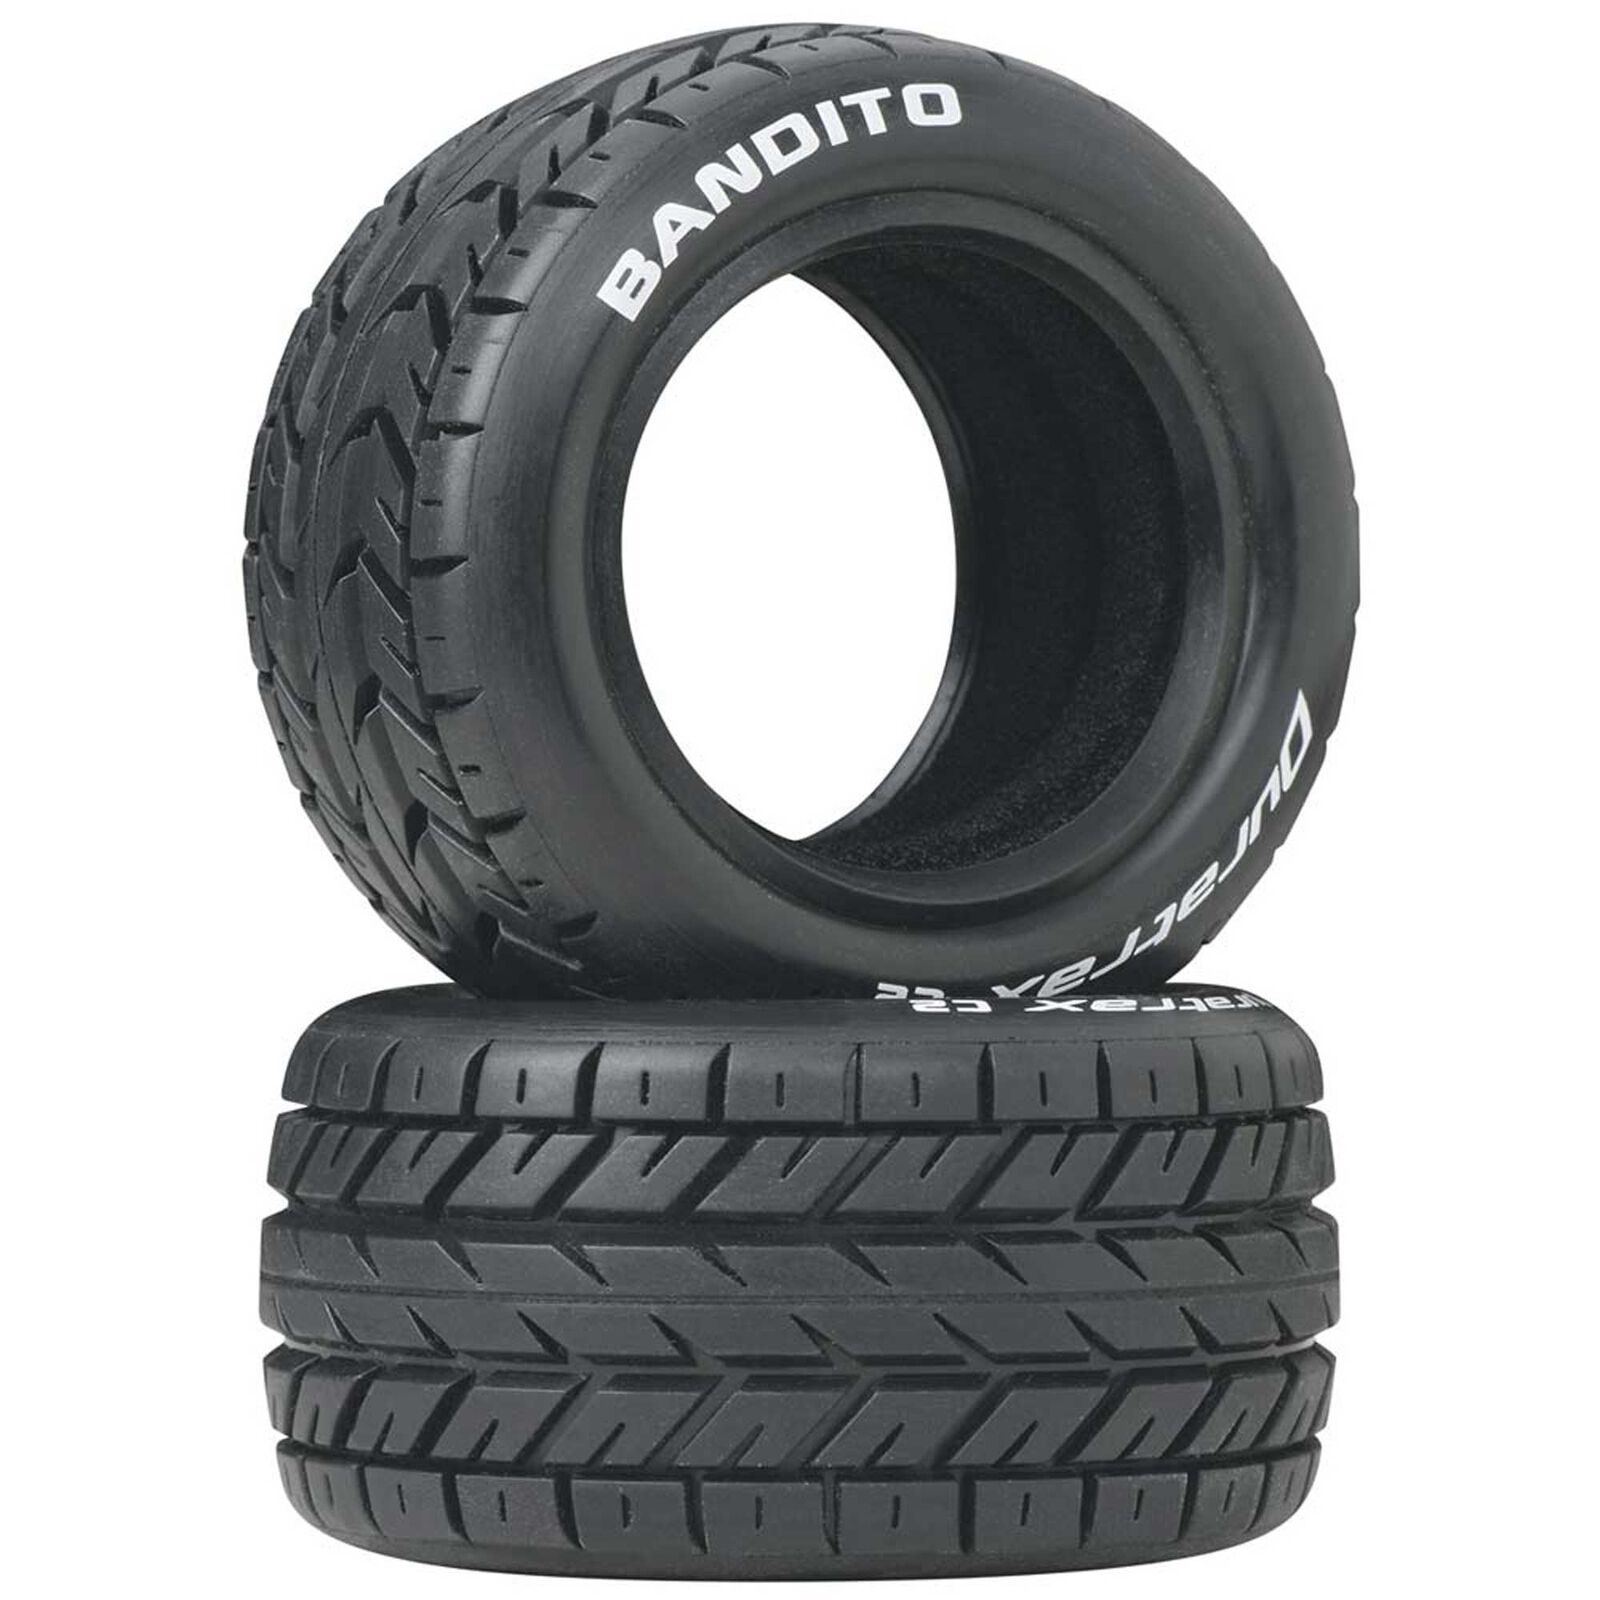 Bandito 1/10 Buggy Tires Rear 4WD C2 (2)